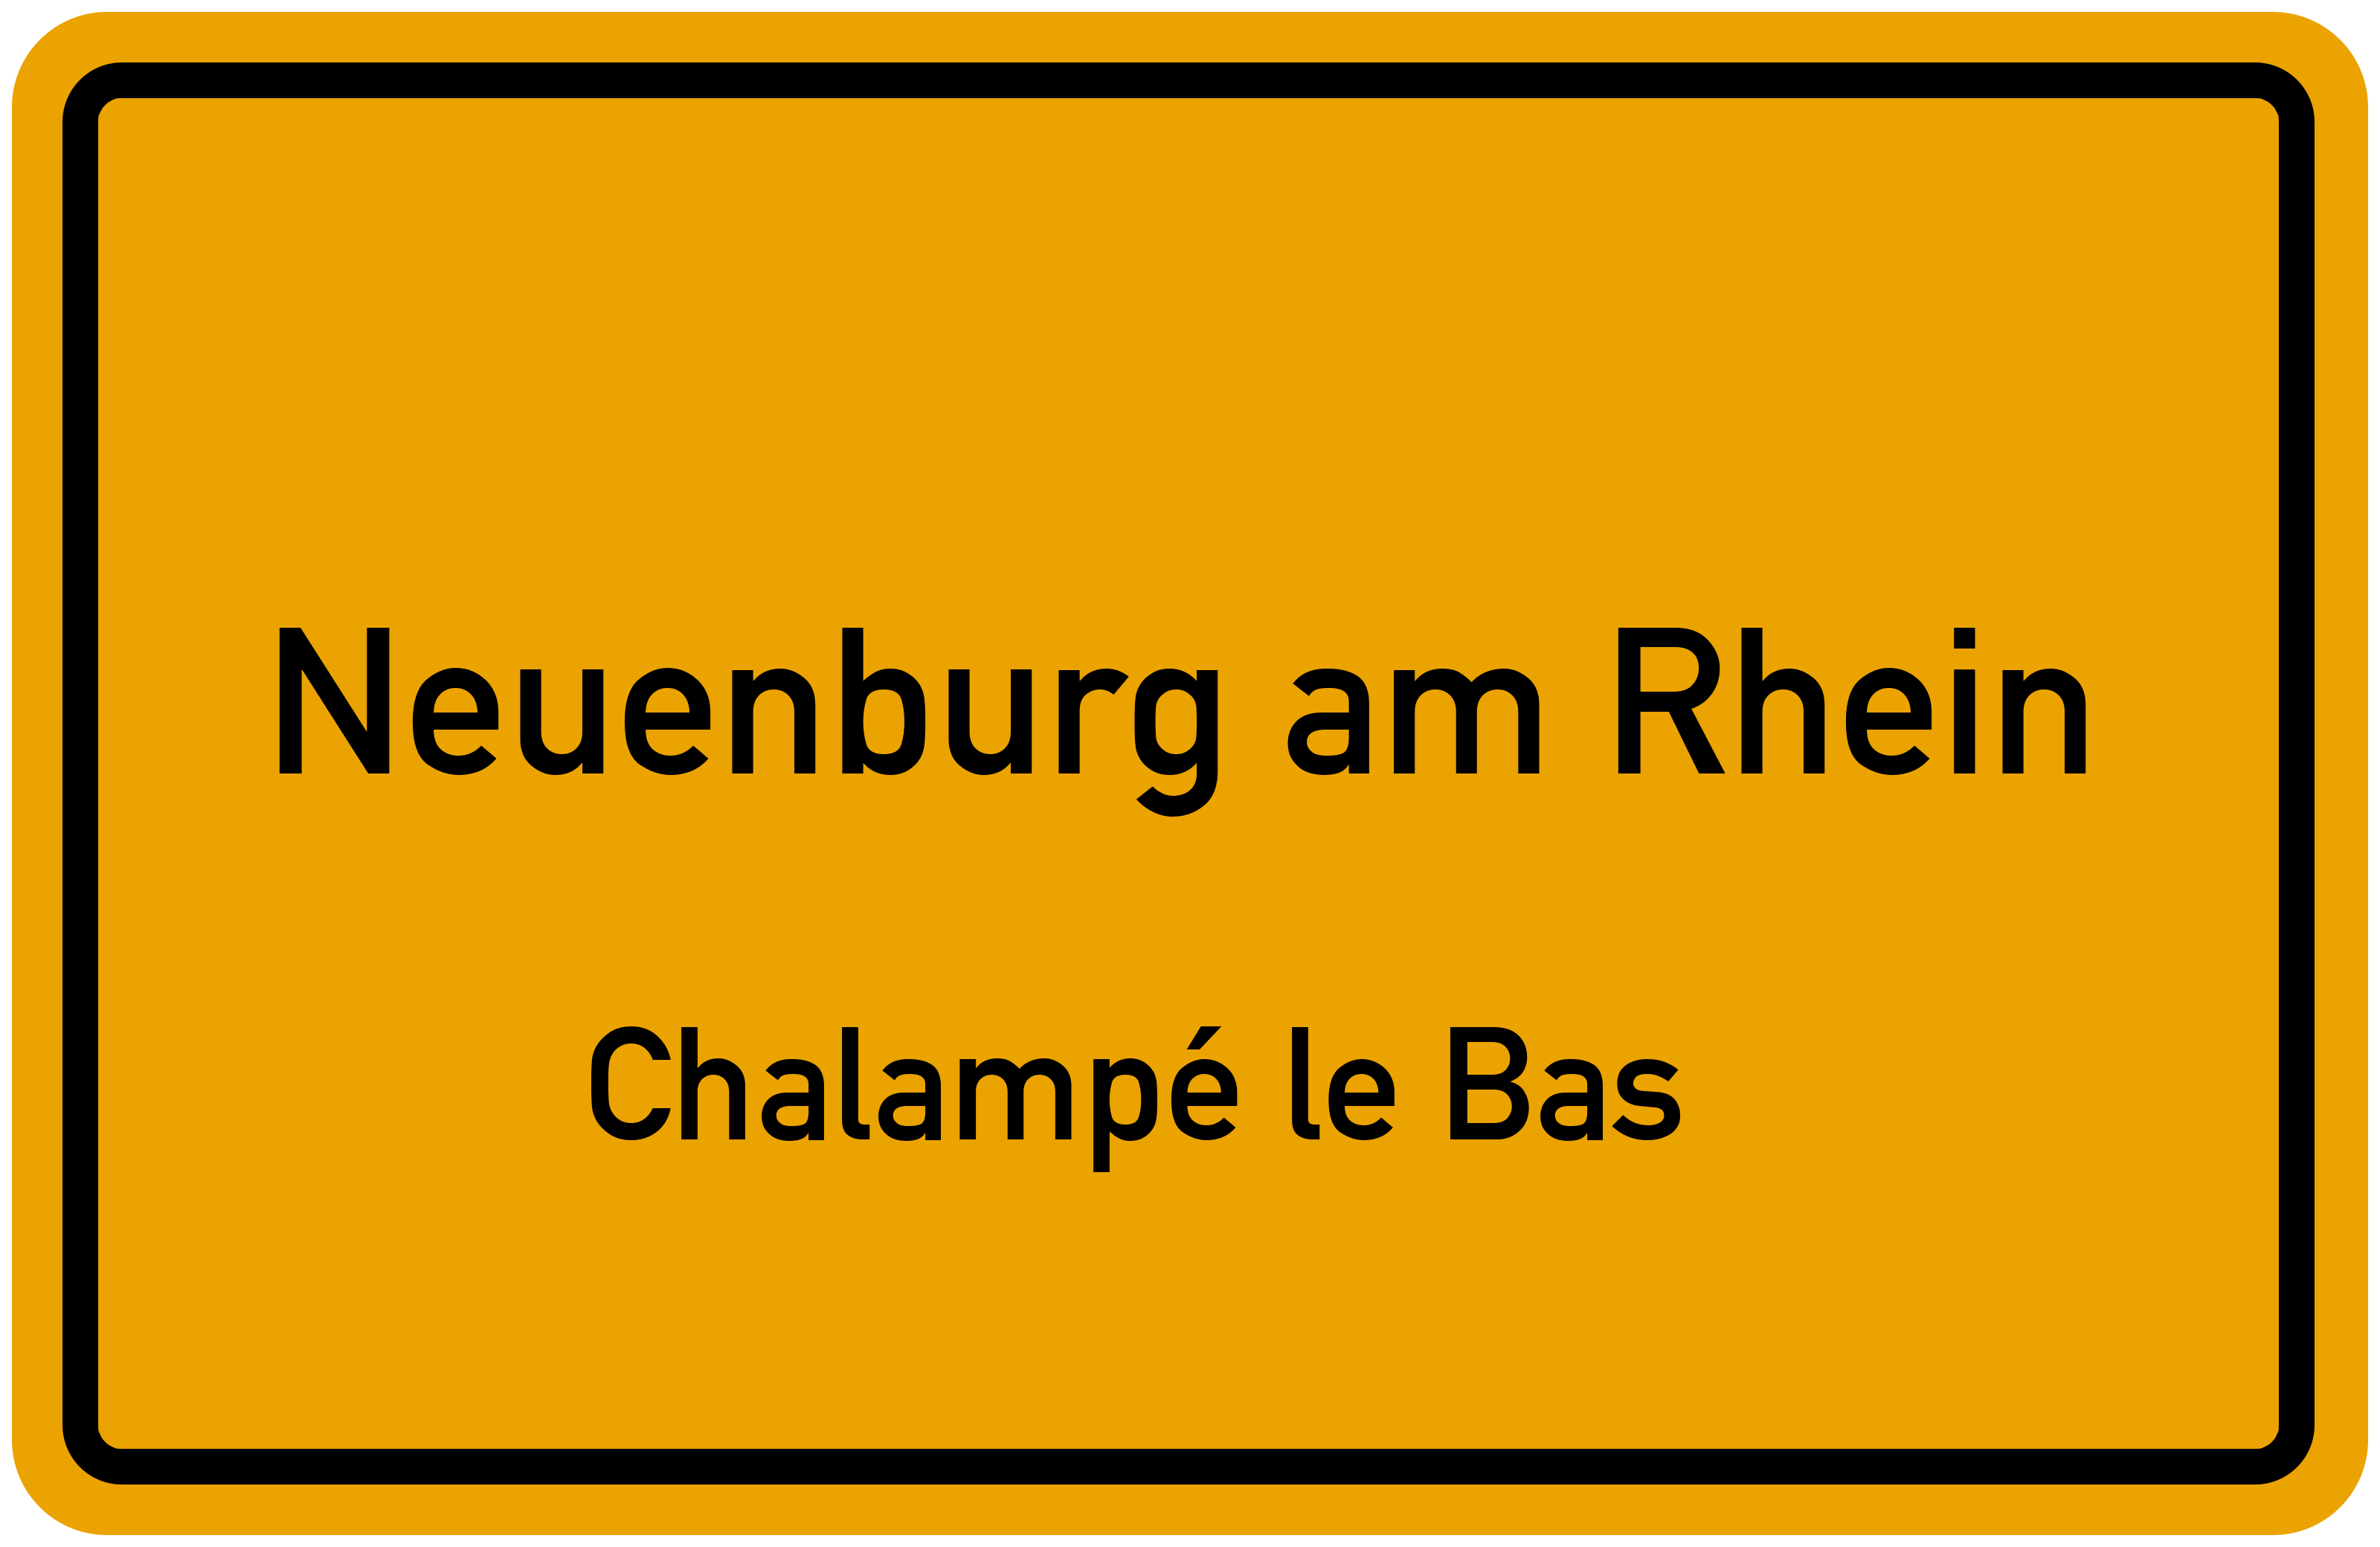 Ortsschild Neuenburg am Rhein-Chalampé le Bas kostenlos: Download & Drucken